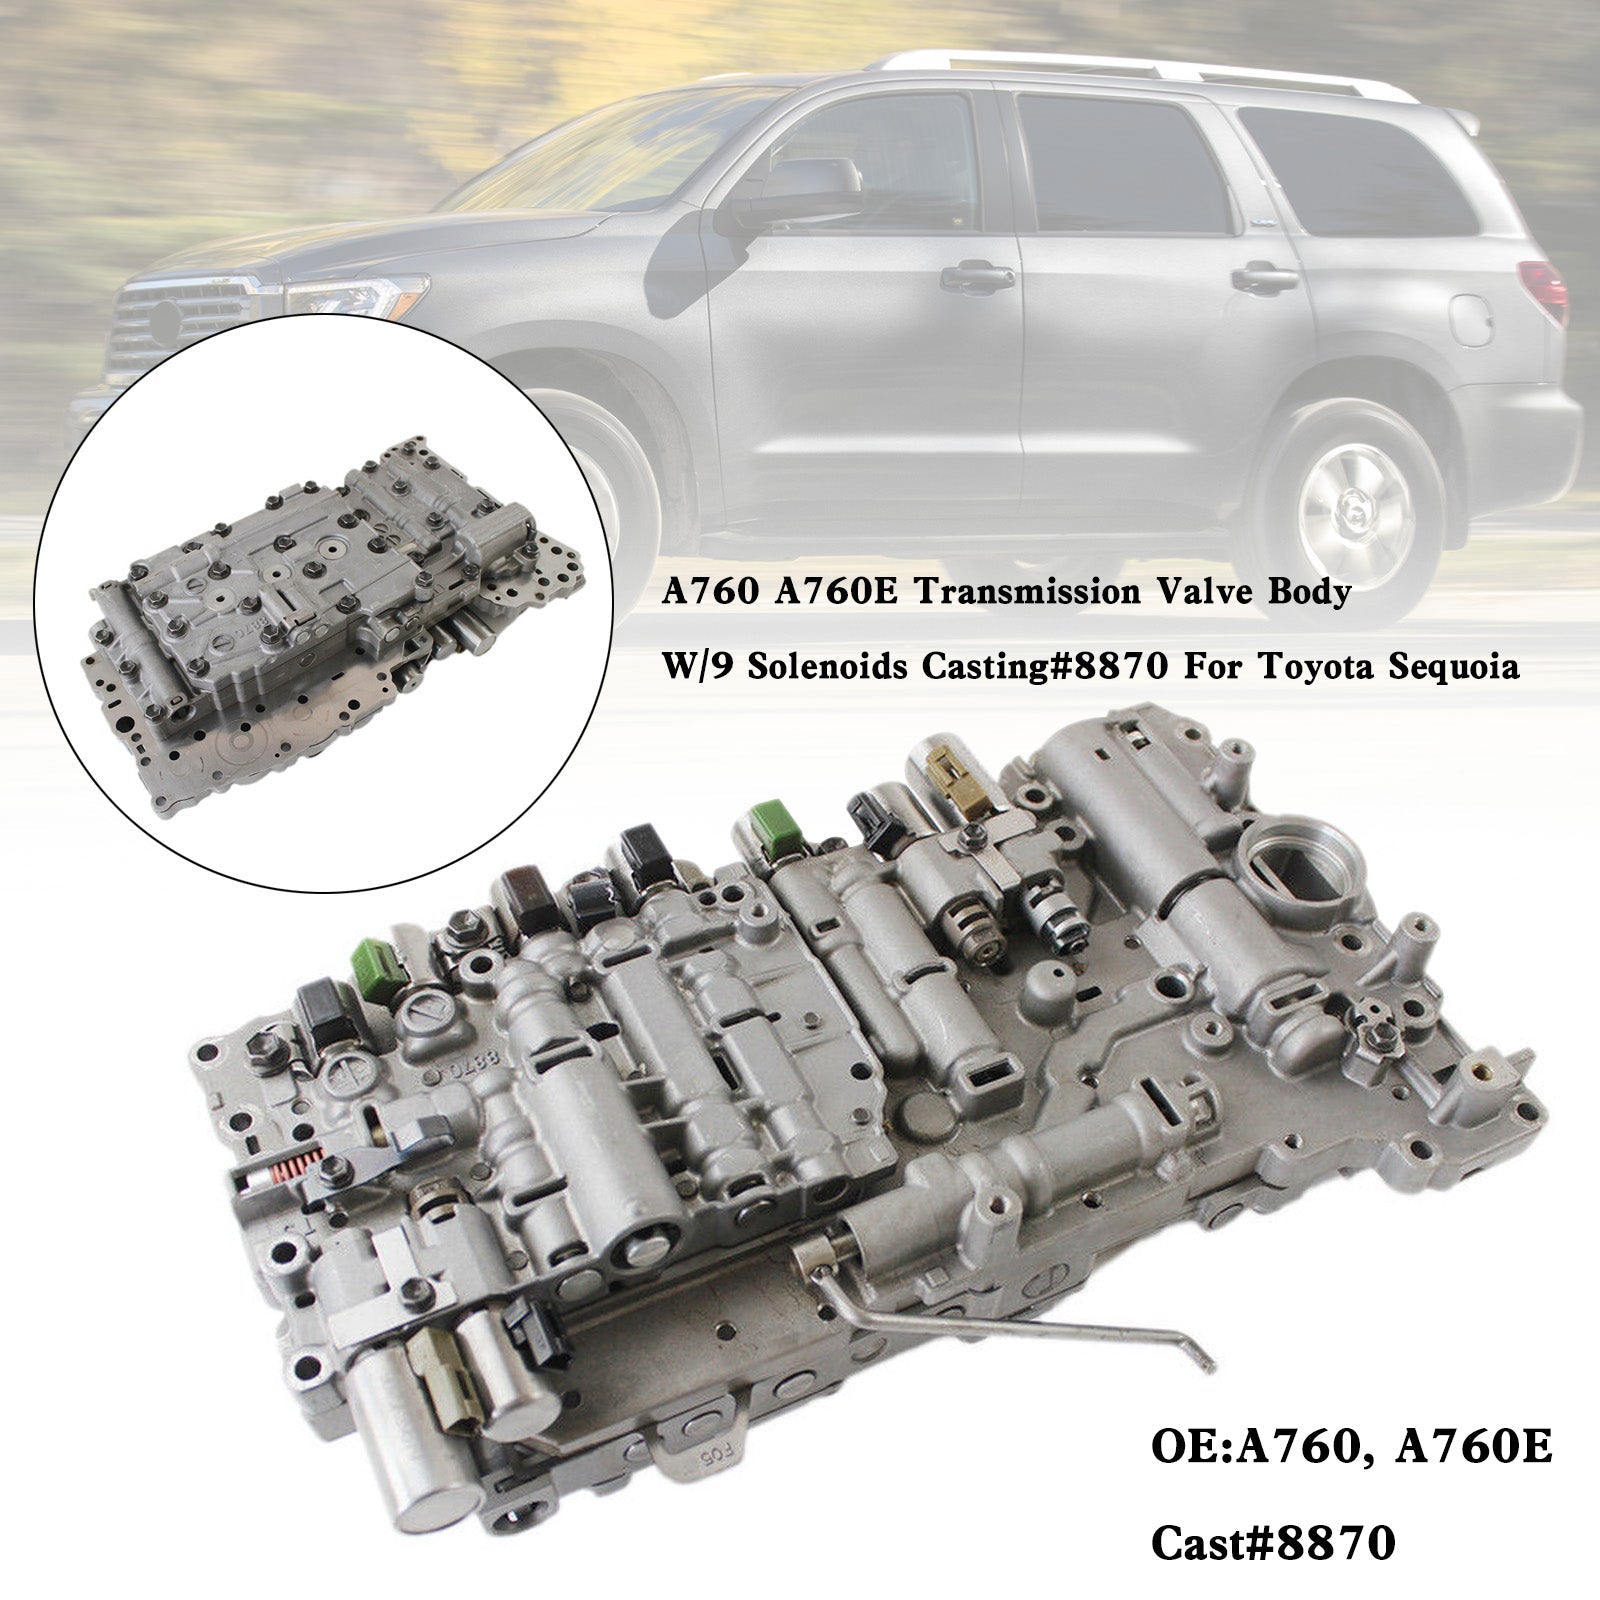 Toyota Sequoia 2009-2012 A760 A760E Corps de soupape de transmission avec 9 solénoïdes moulés # 8870